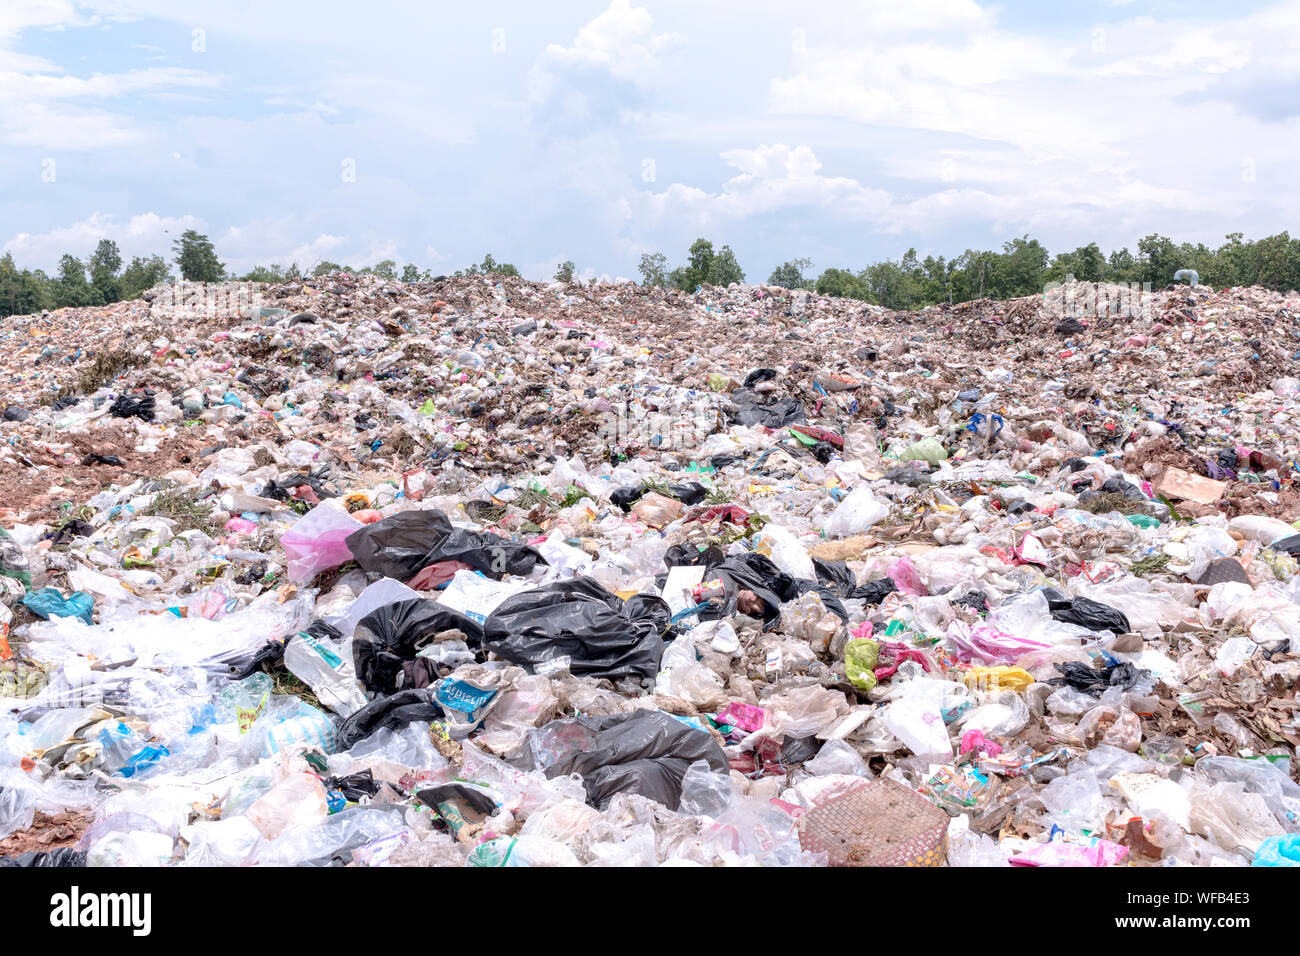 Land Of Garbage At Junkyard Against Sky Stock Photo